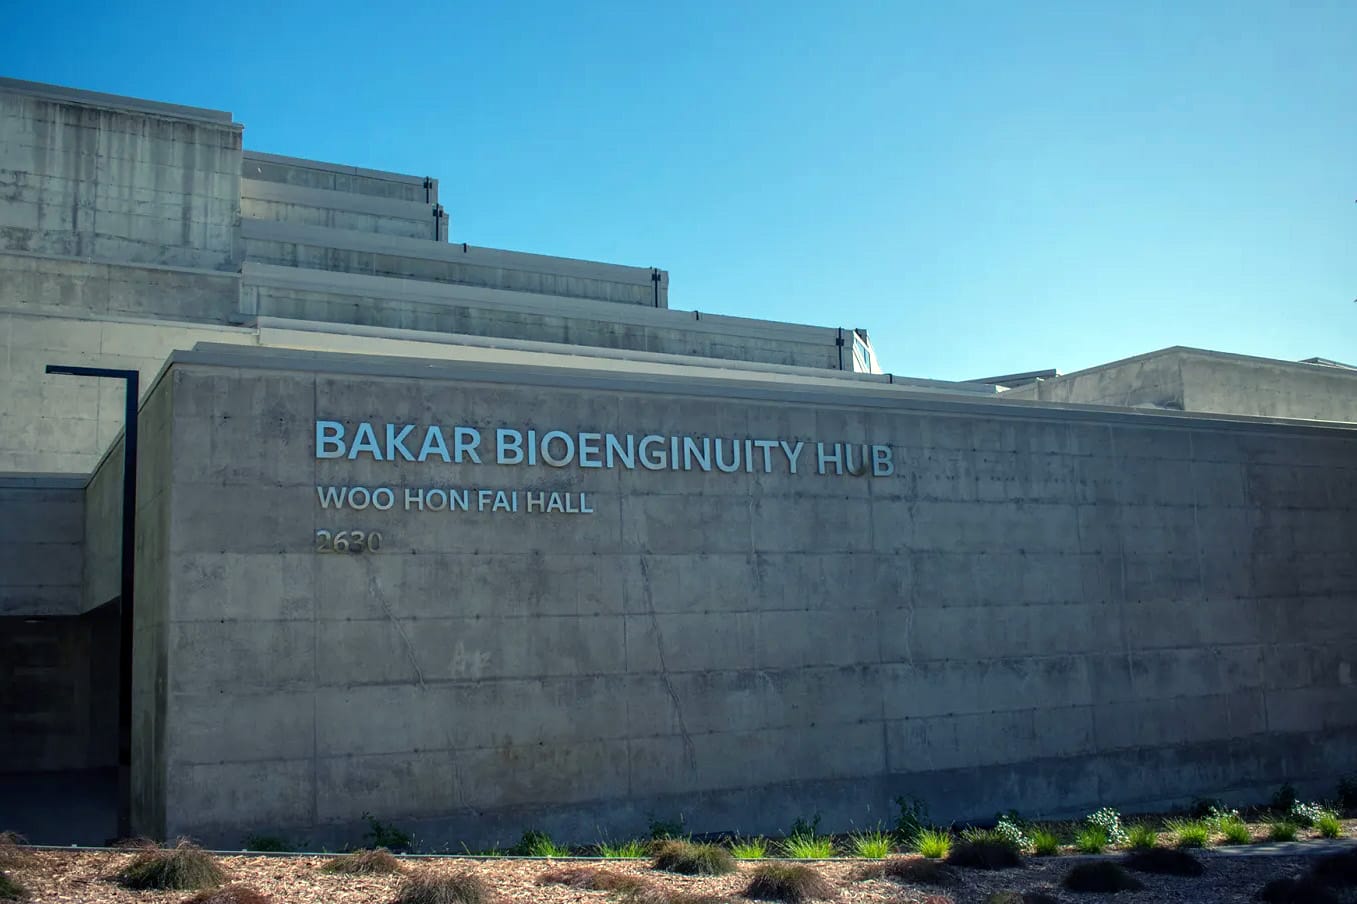 Photo of outside of Bakar BioEnginuity Hub from Durant St.